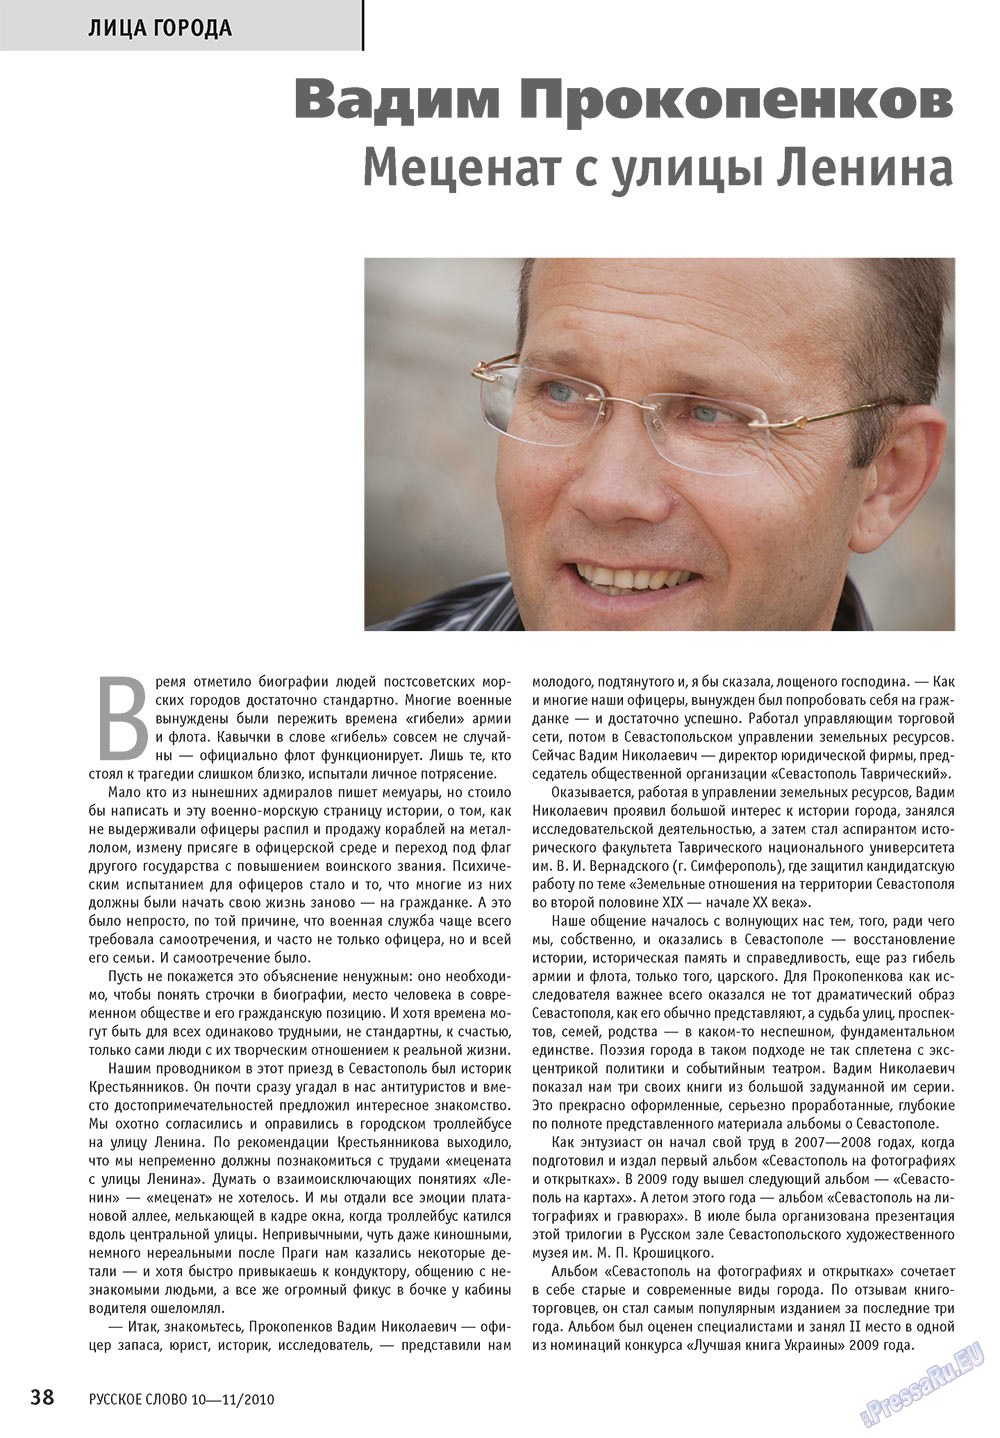 Русское слово, журнал. 2010 №10 стр.40